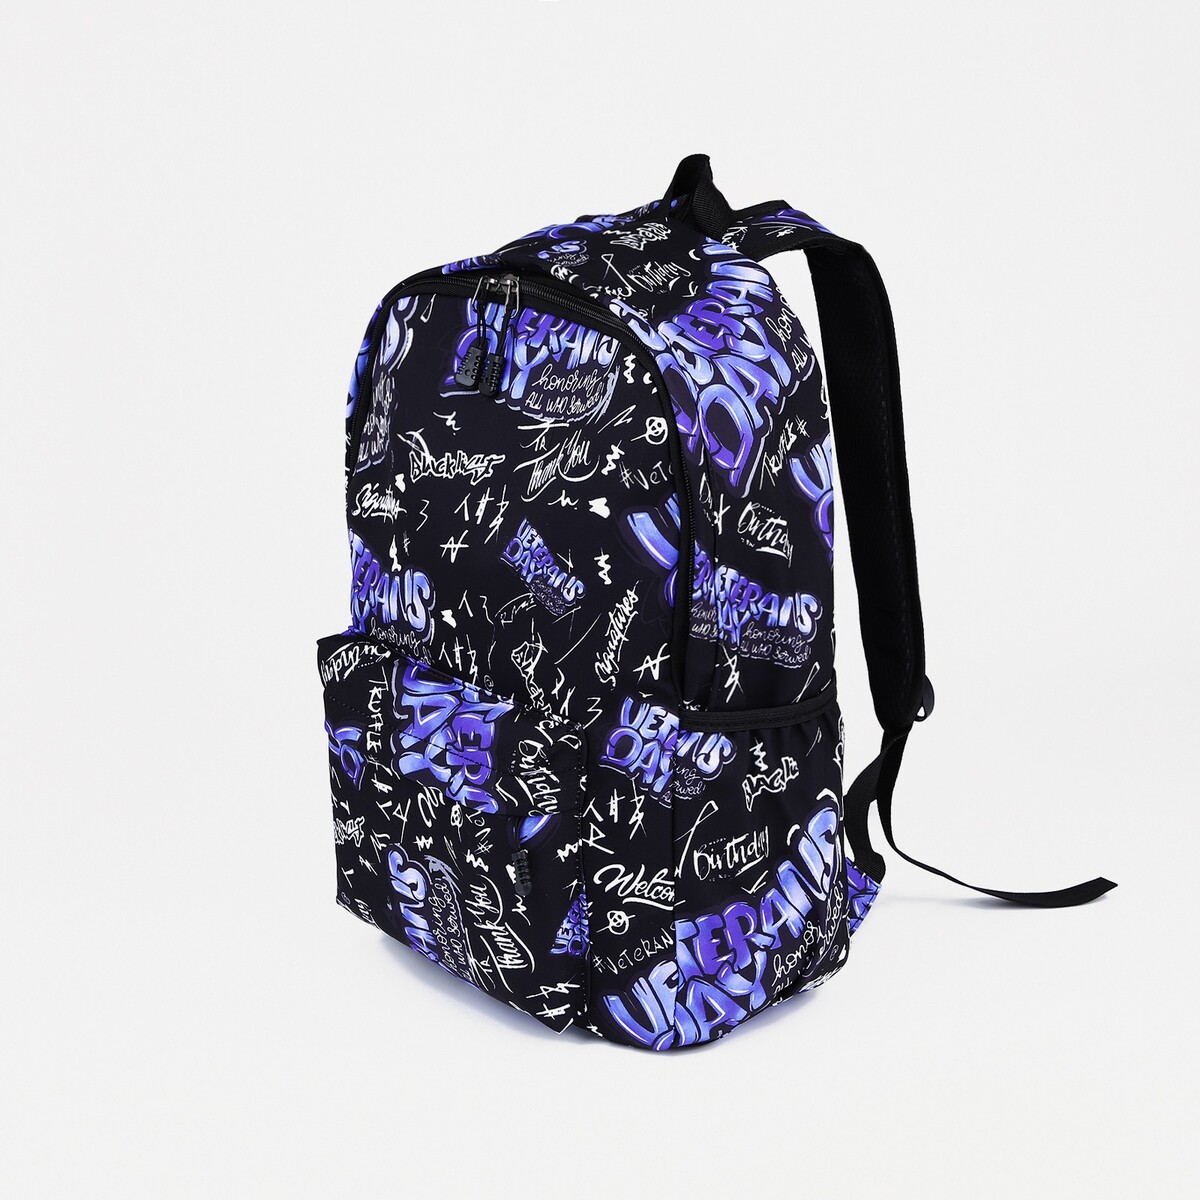 Рюкзак на молнии, 3 наружных кармана, цвет фиолетовый/черный рюкзак туристический на молнии 4 наружных кармана красный